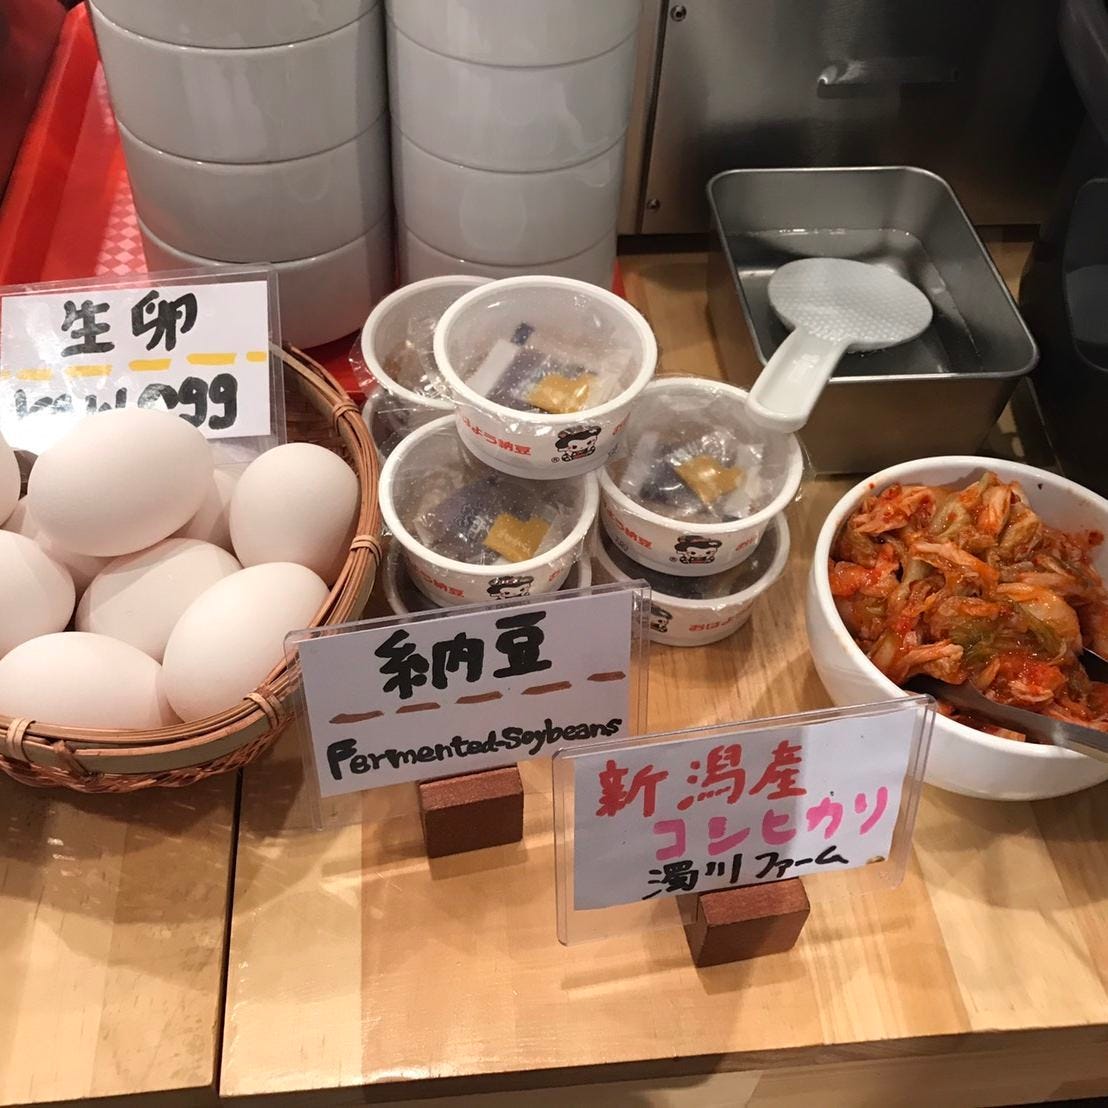 味噌汁・ご飯・サラダ・おしんこ・シェフのおすすめ料理食べ放題